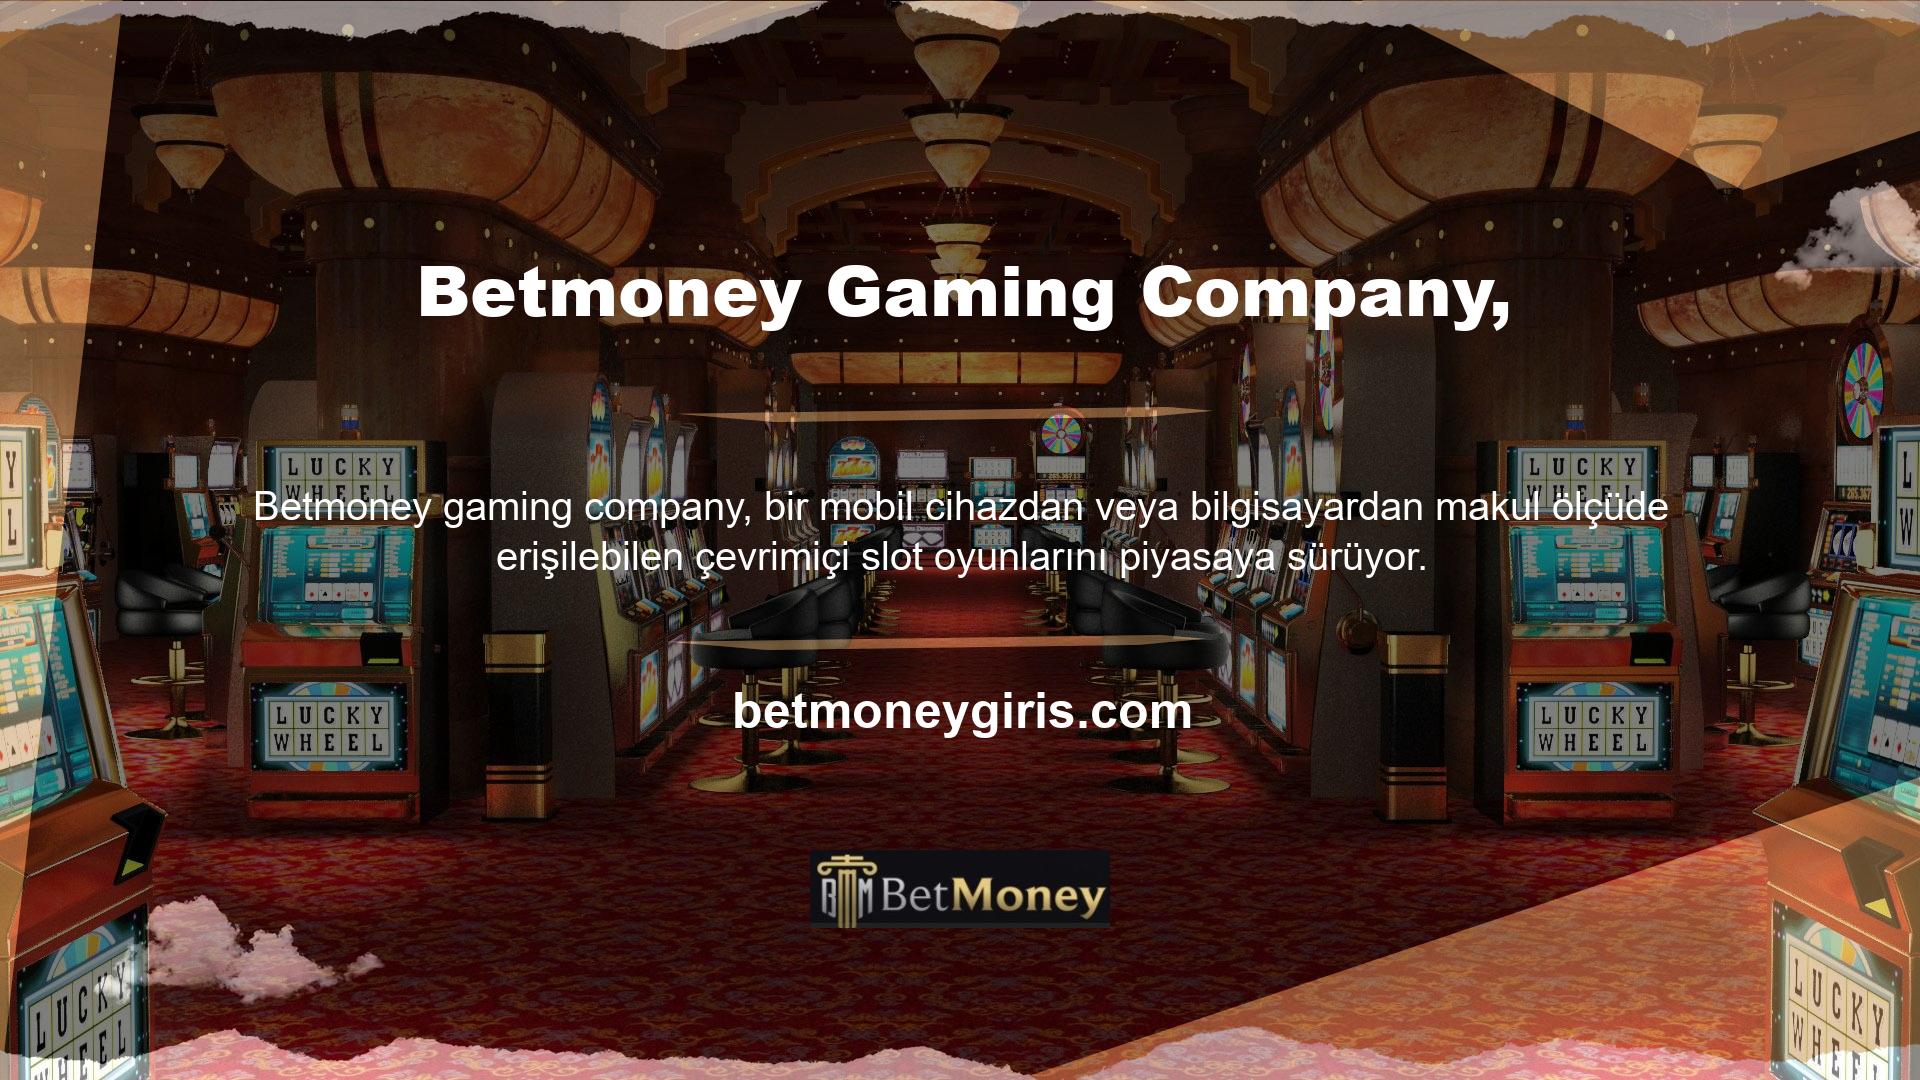 Betmoney Gaming Company, bir mobil cihazdan veya bilgisayardan makul ölçüde erişilebilen, adreslenebilir pazarlarda çevrimiçi casino oyunları sunmaktadır